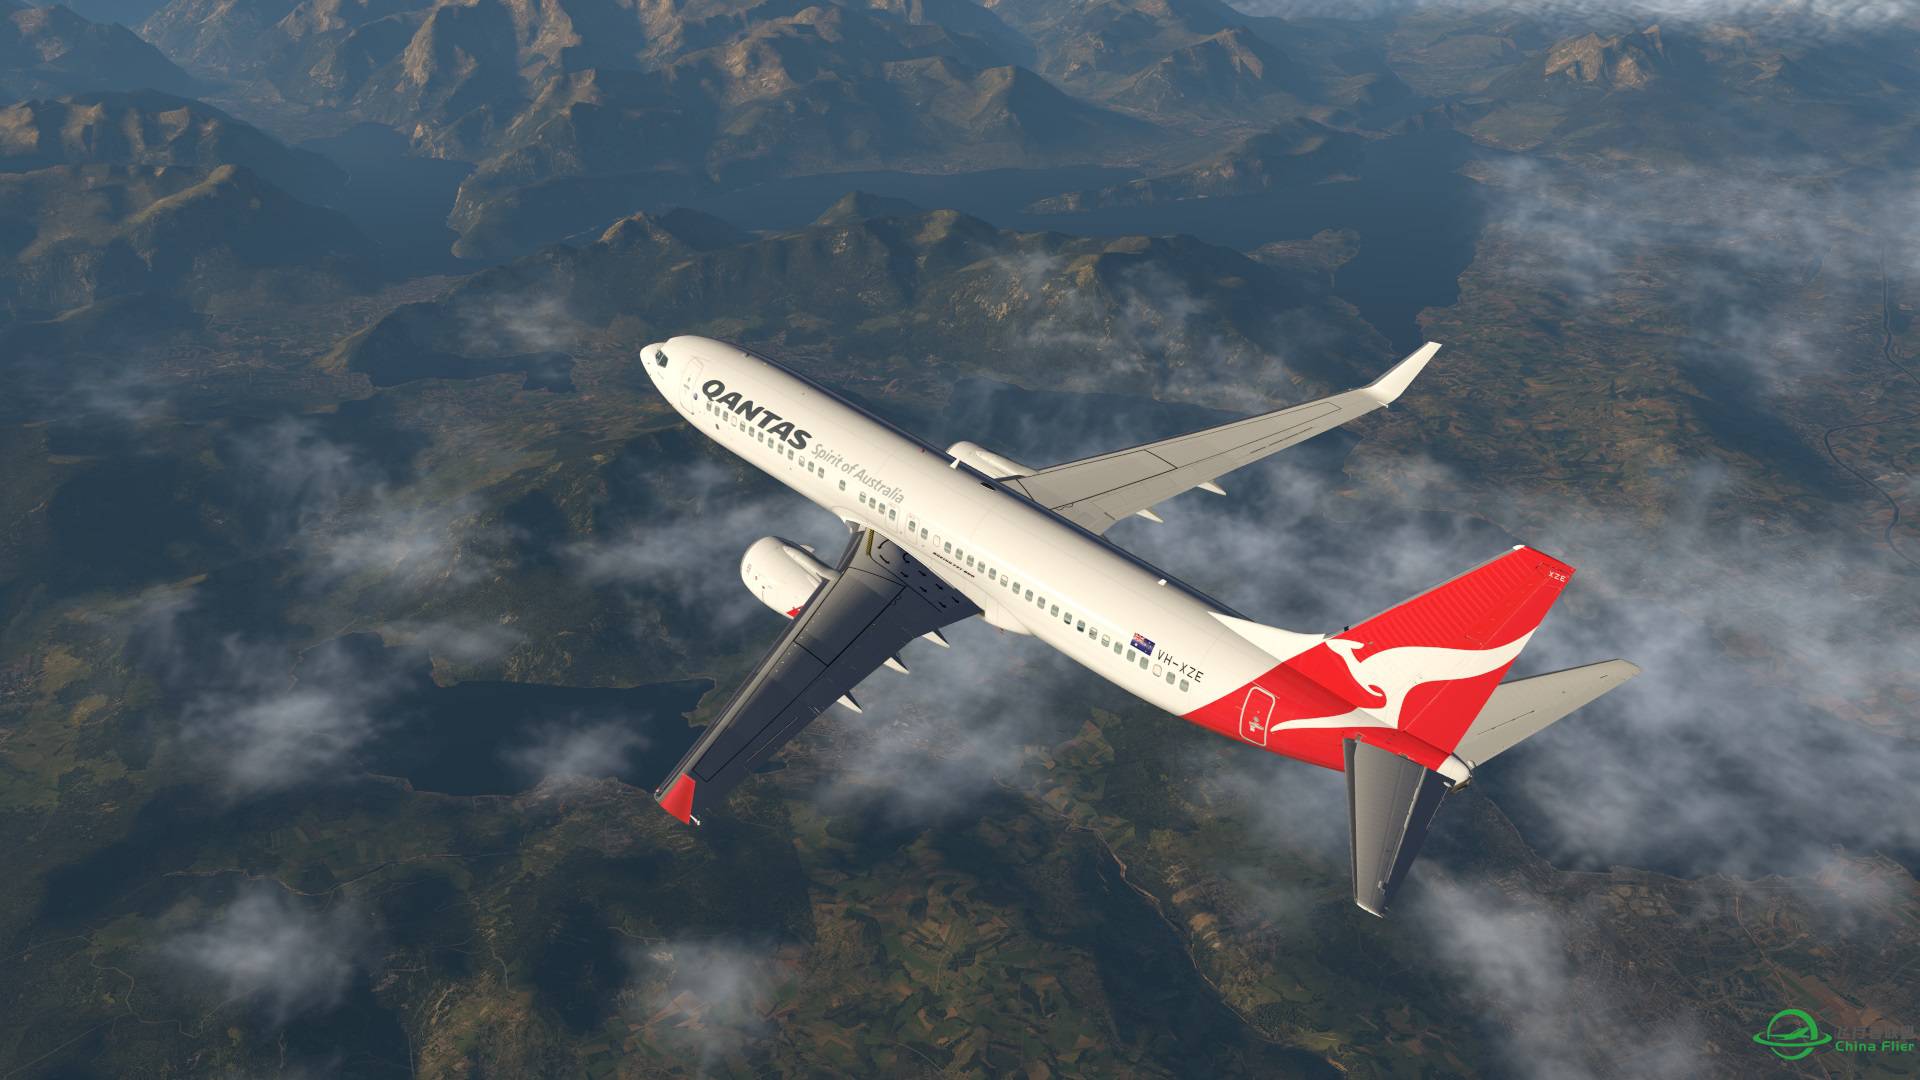 飞跃阿尔卑斯山 X-plane 11-5406 